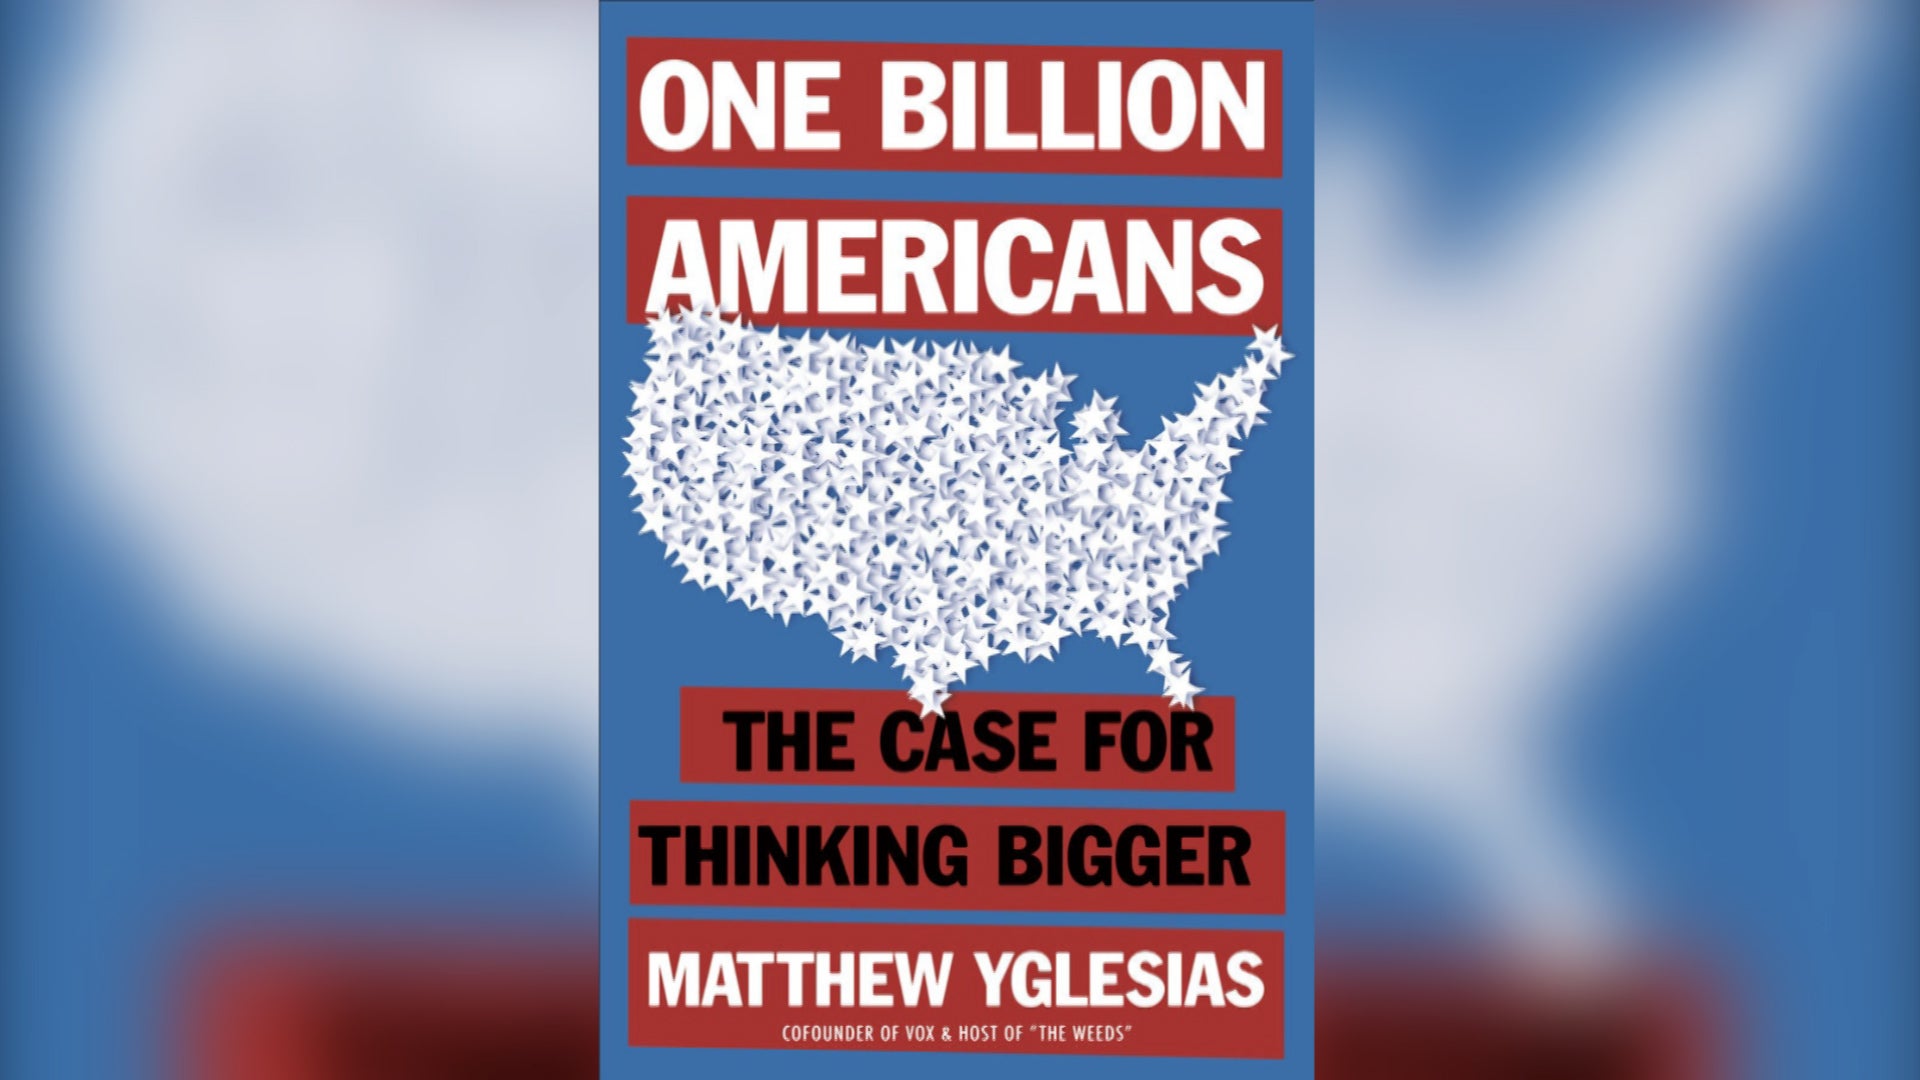 One Billion Americans by Matthew Yglesias